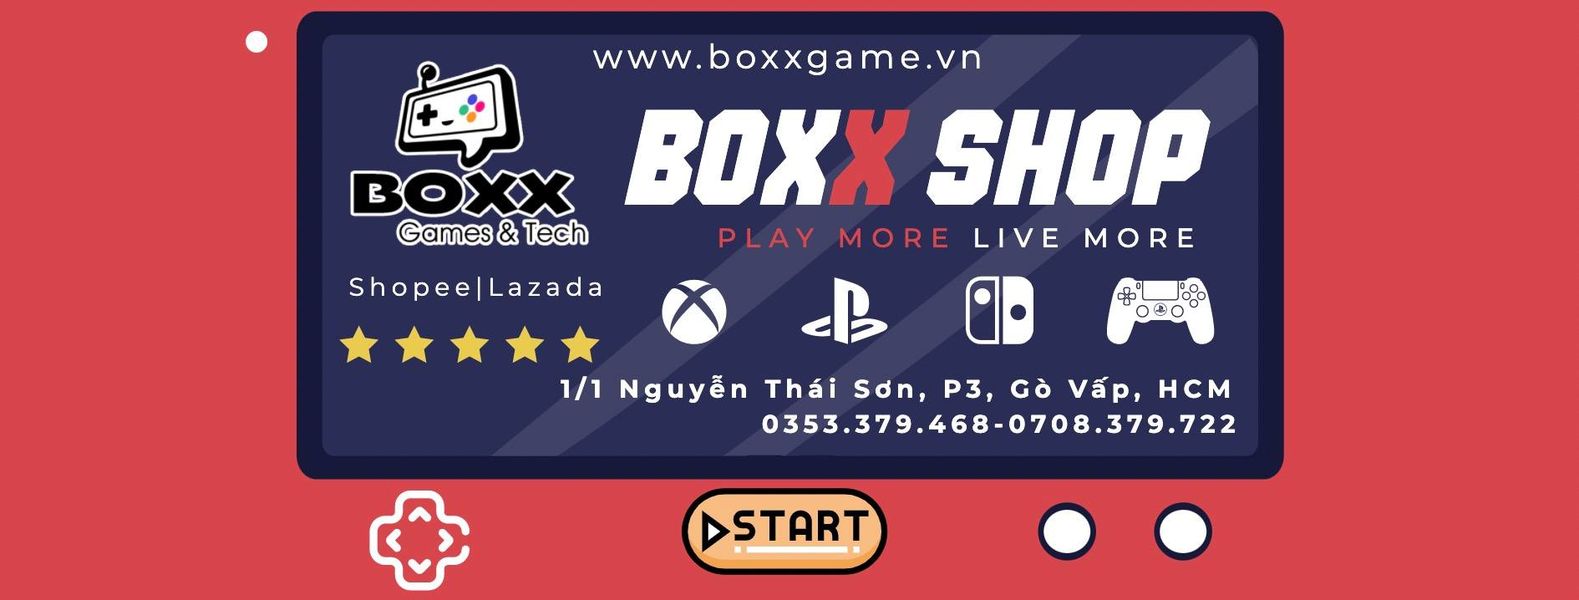 Boxx Shop